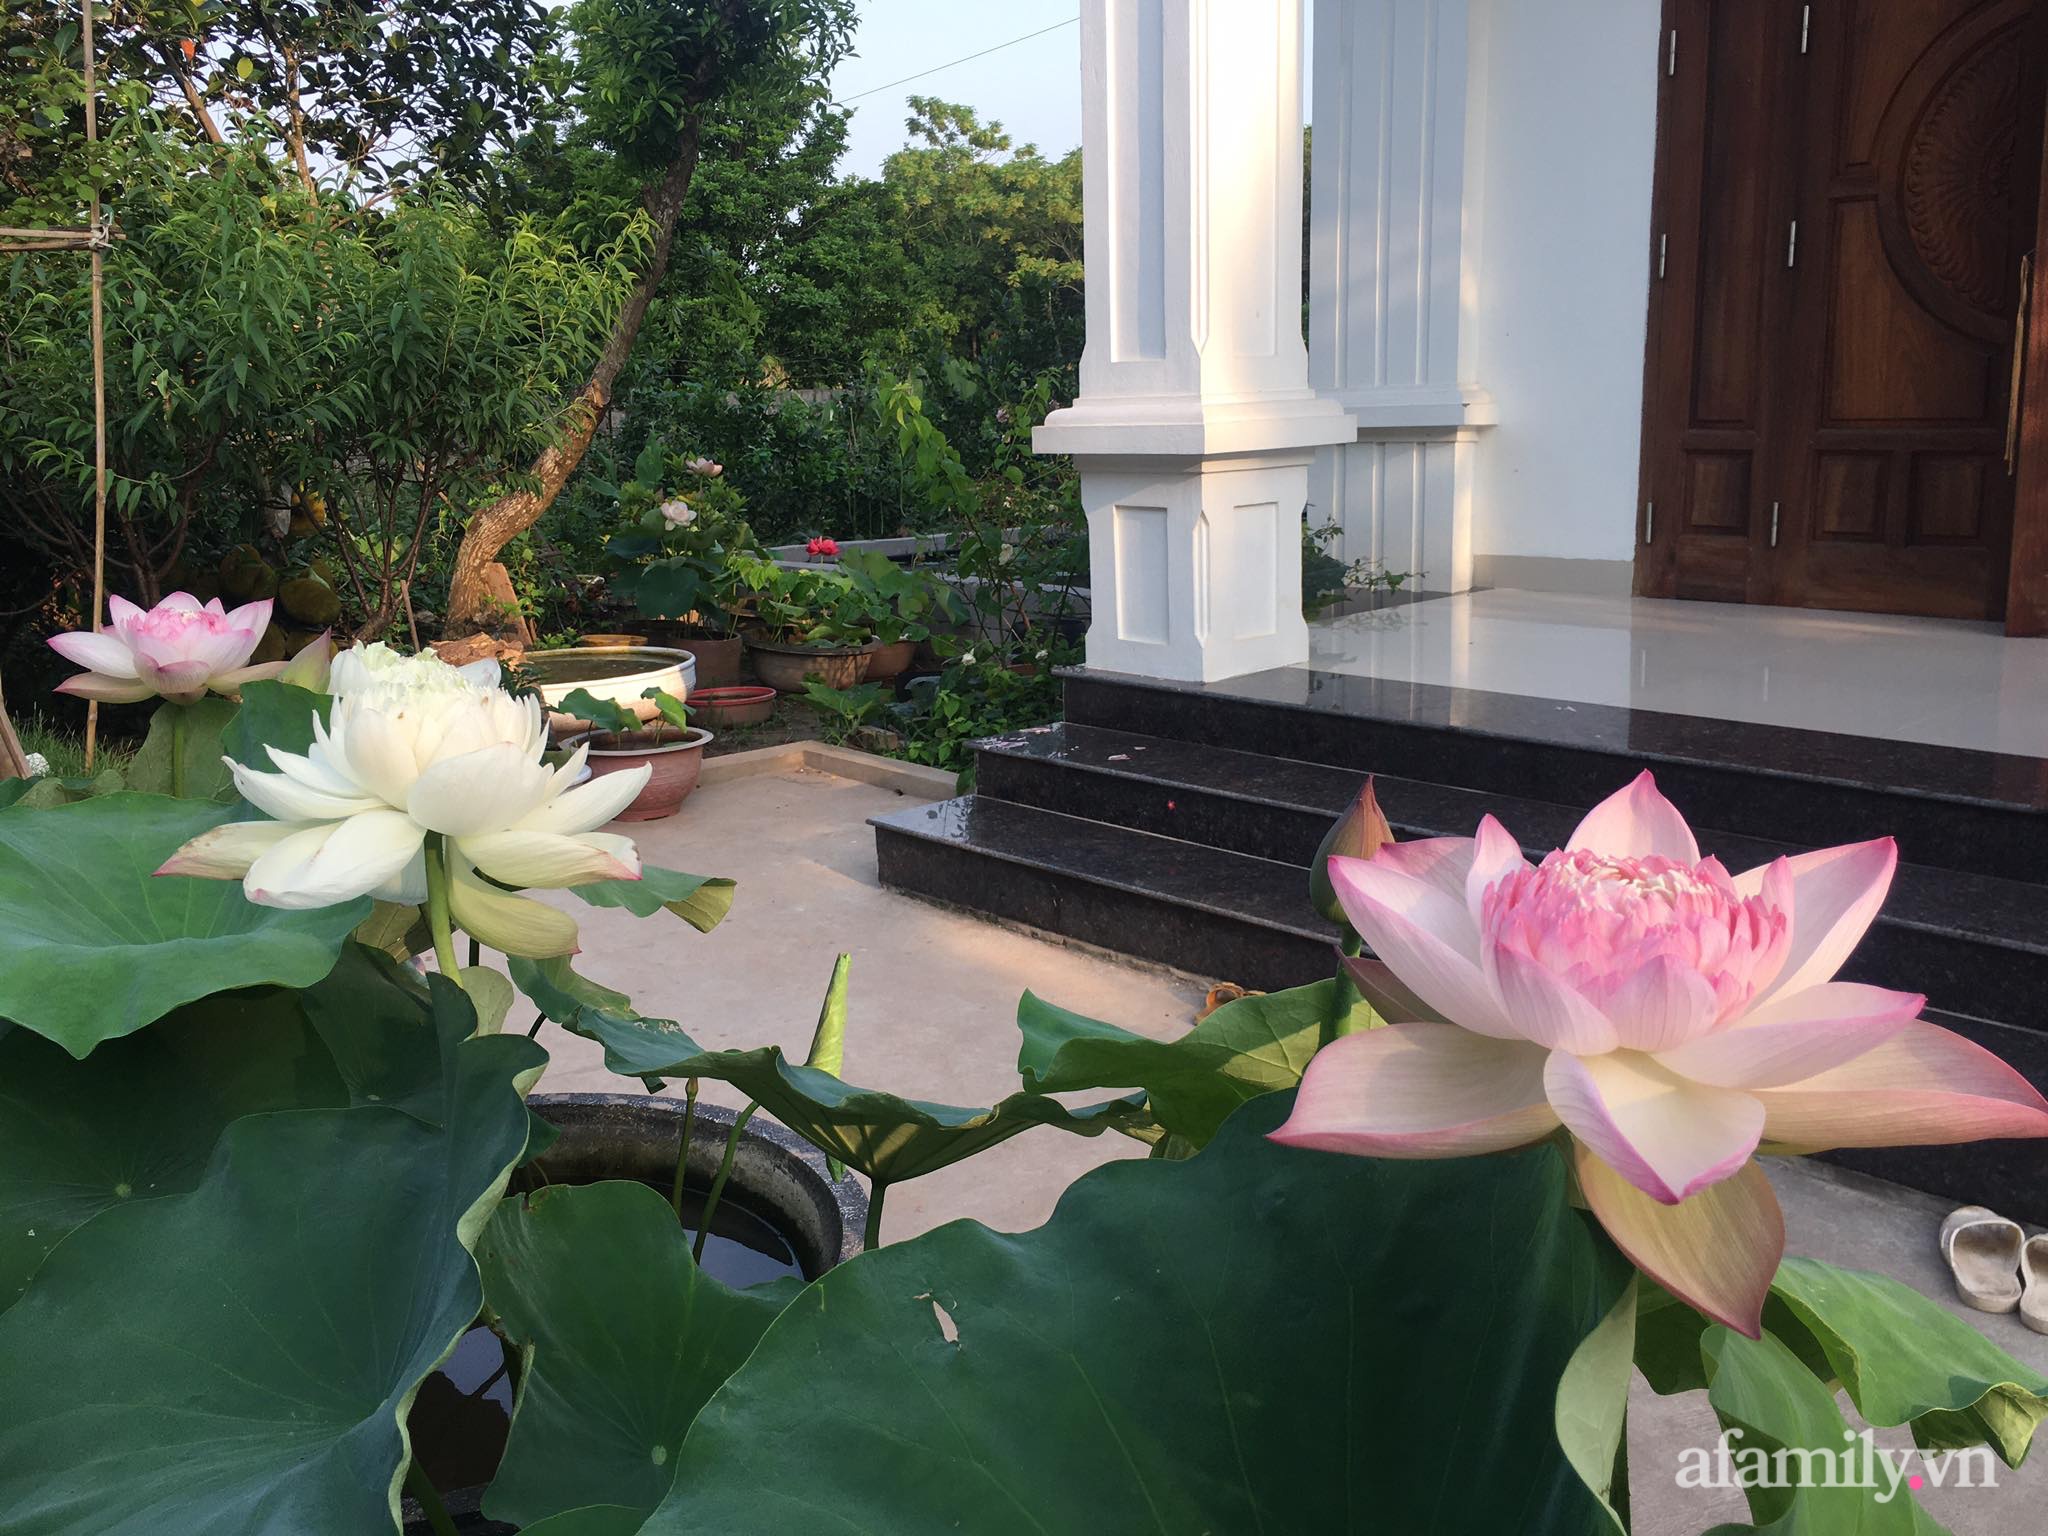 Vườn hoa sen và hoa súng tỏa hương sắc rực rỡ ở Hà Nam